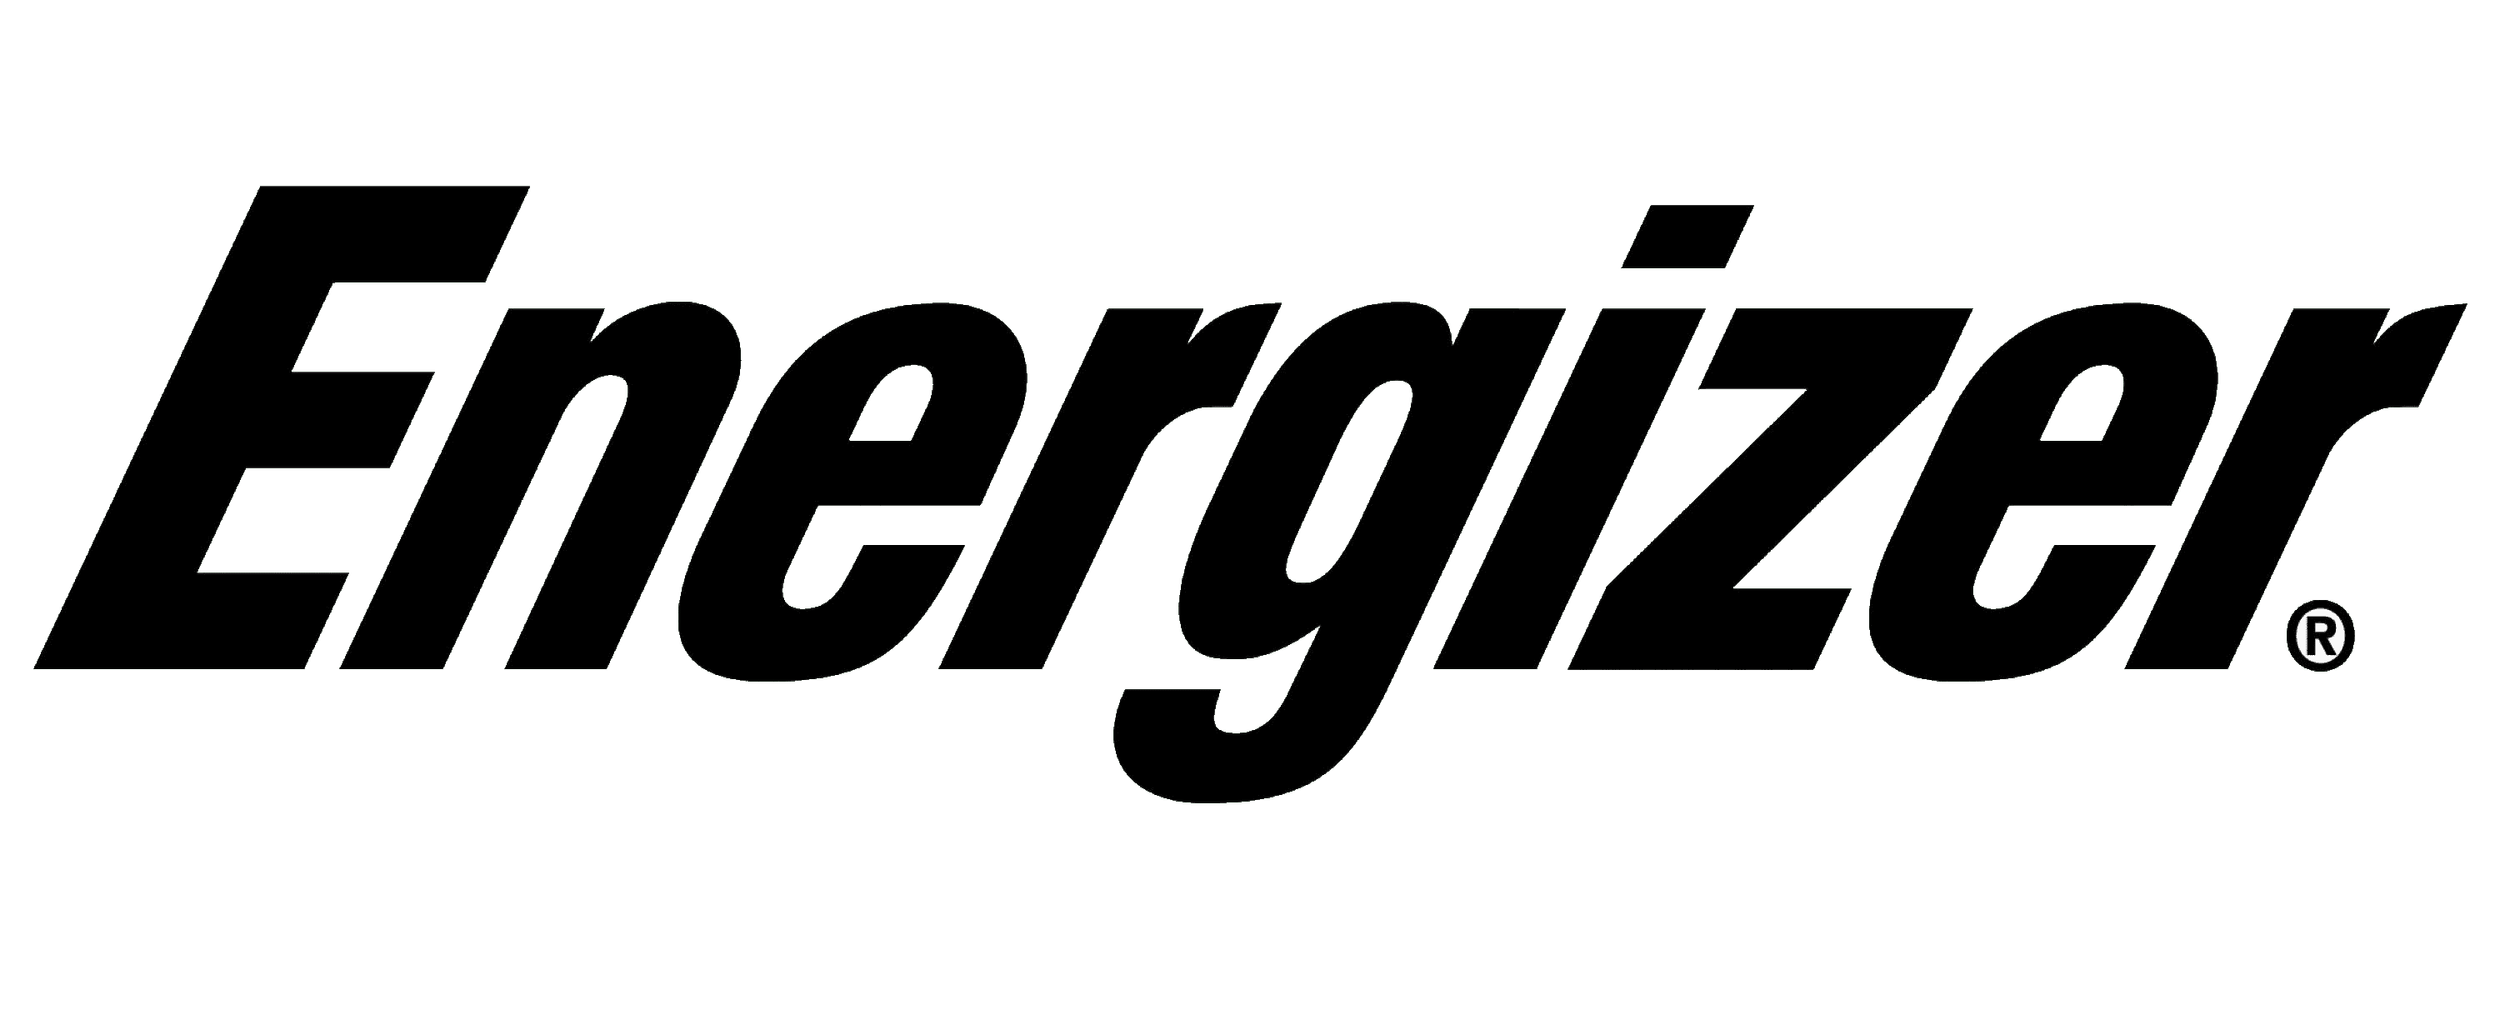 Energizer-logo.png